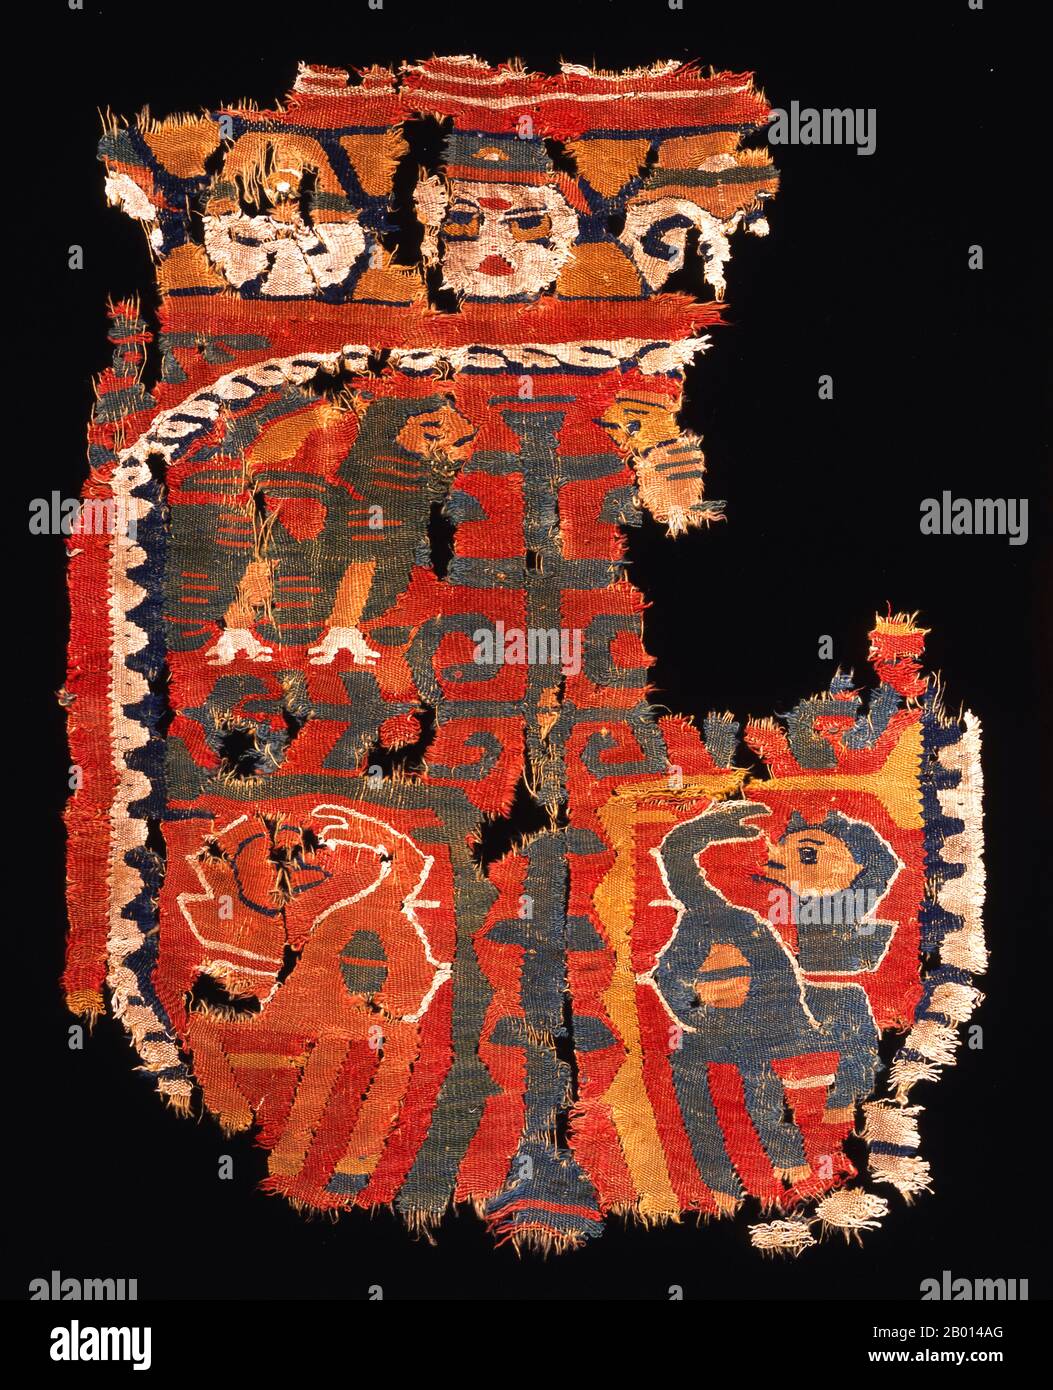 Égypte : fragment de tapisserie décorative de laine et de lin non ondulé, 9e-10e siècle. Cette tapisserie date probablement de la dynastie turque des Tulunidés. Les dessins reflètent à la fois la tradition copte locale et les tissus de soie plus fins du type destiné aux tribunaux byzantins et sasaniens. Il représente un arbre stylisé de vie entouré de sphinx et de lions encadrés par un médaillon. Banque D'Images